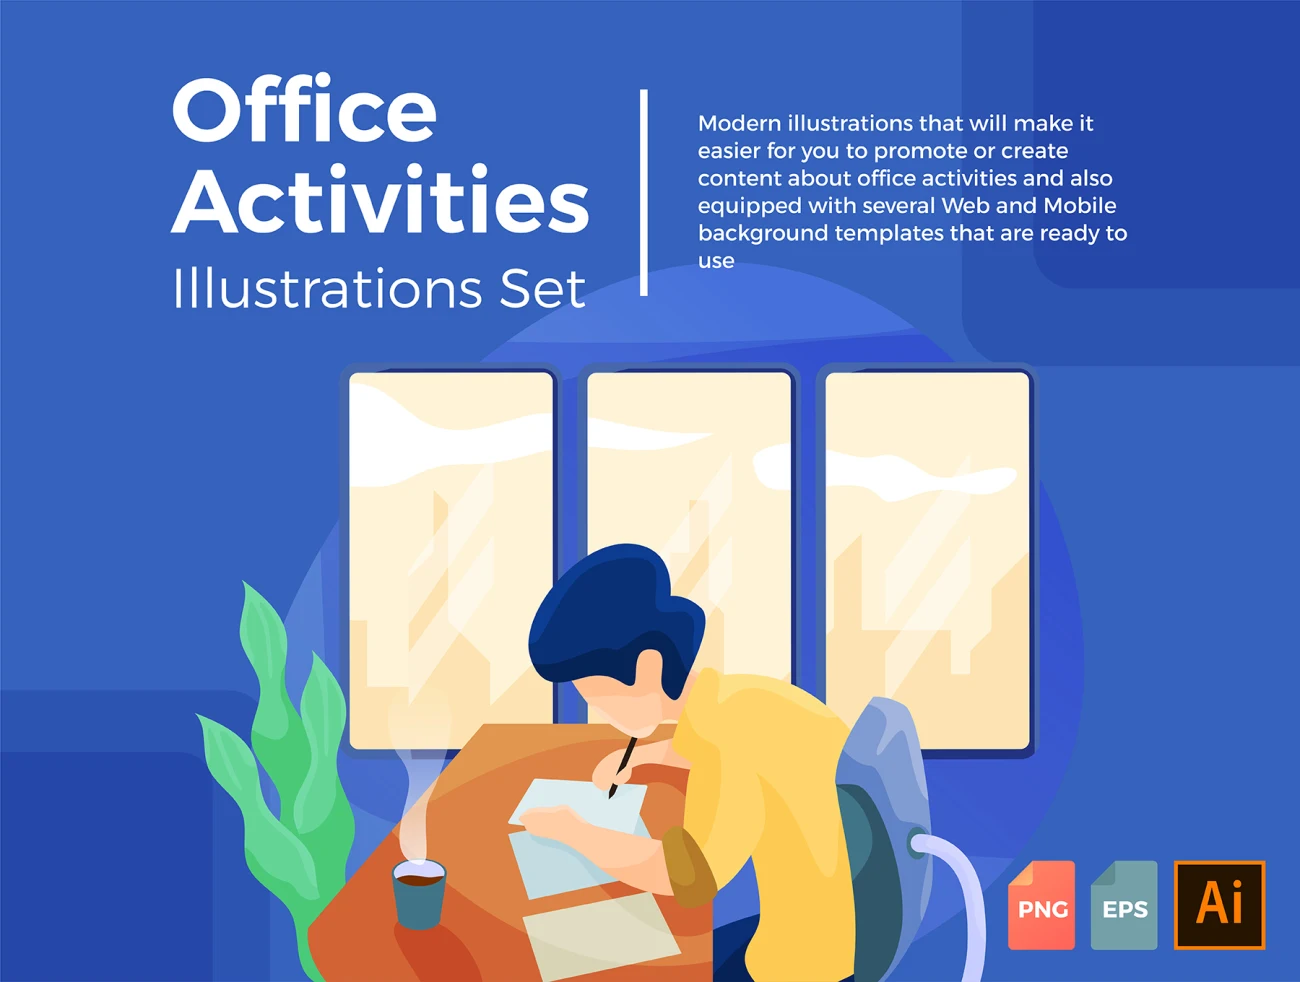 Office Activities Illustration Set 5款办公场景插画合集-商业金融、场景插画、插画、数据演示、概念创意、电子商务、社交购物、科技智能、线条手绘、职场办公、趣味漫画-到位啦UI